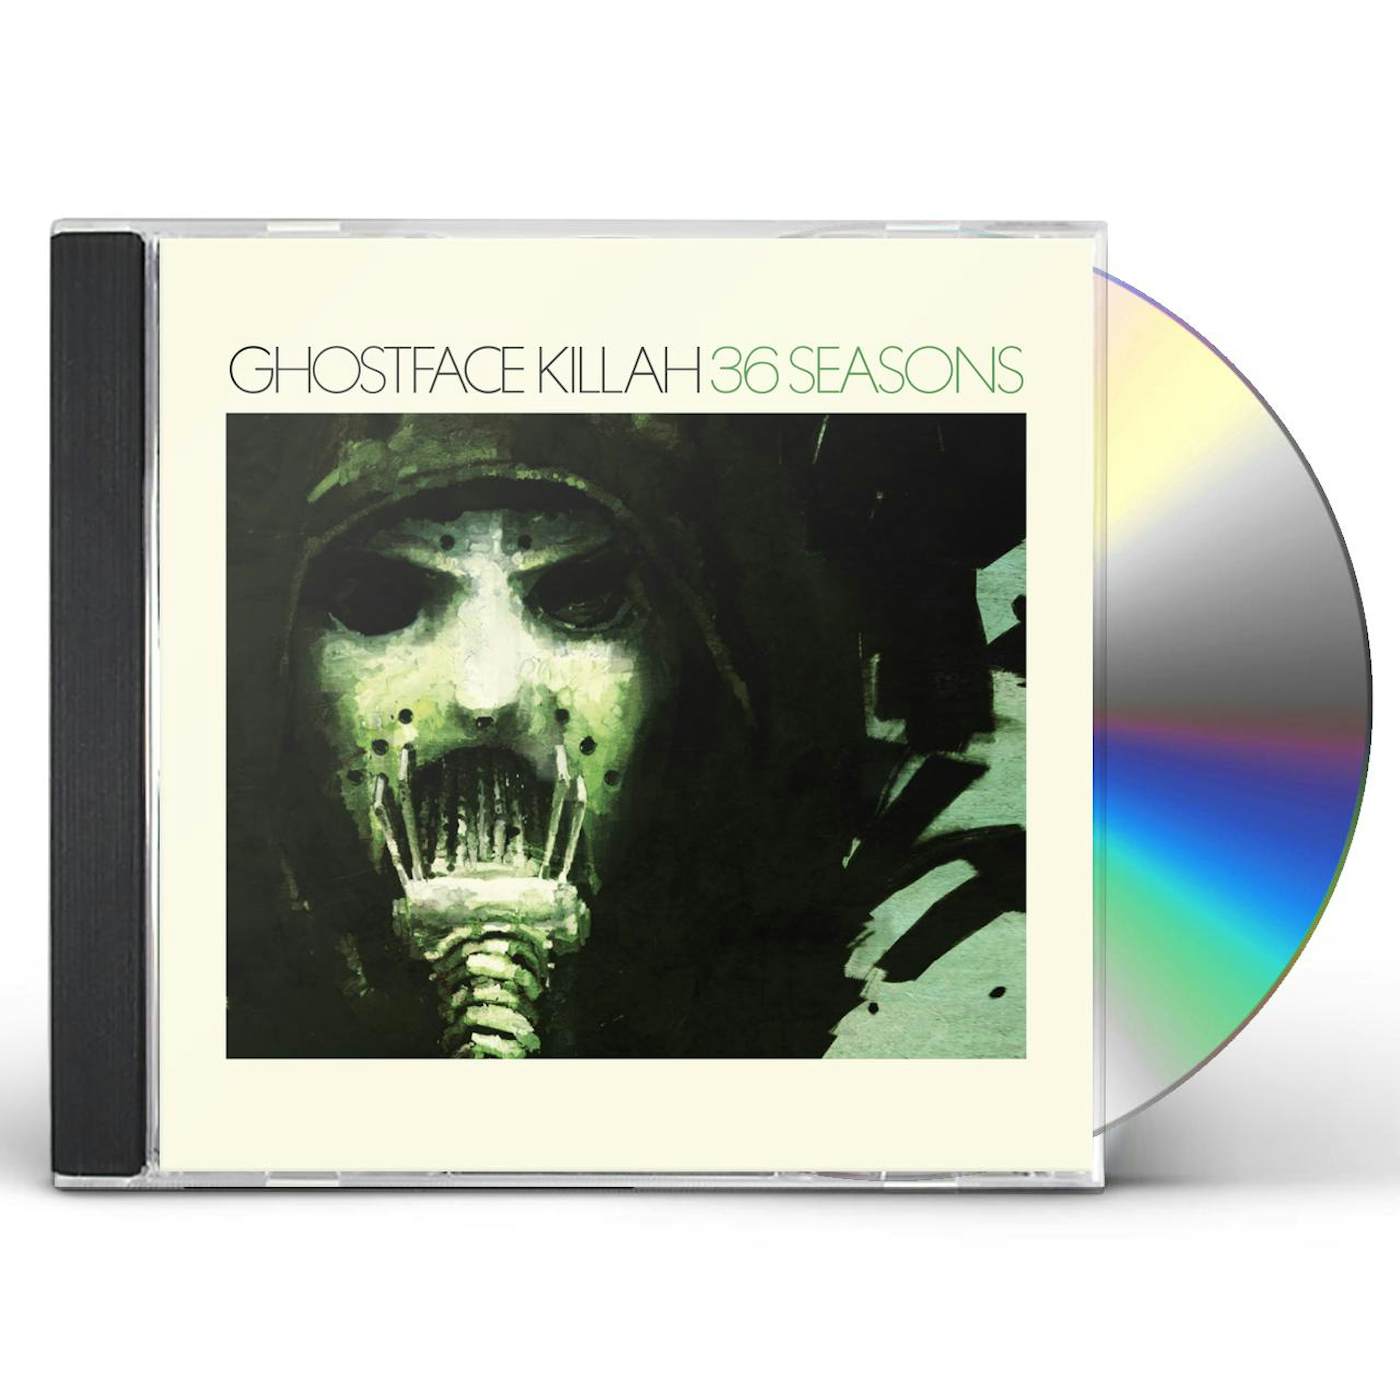 Ghostface Killah 36 SEASONS CD